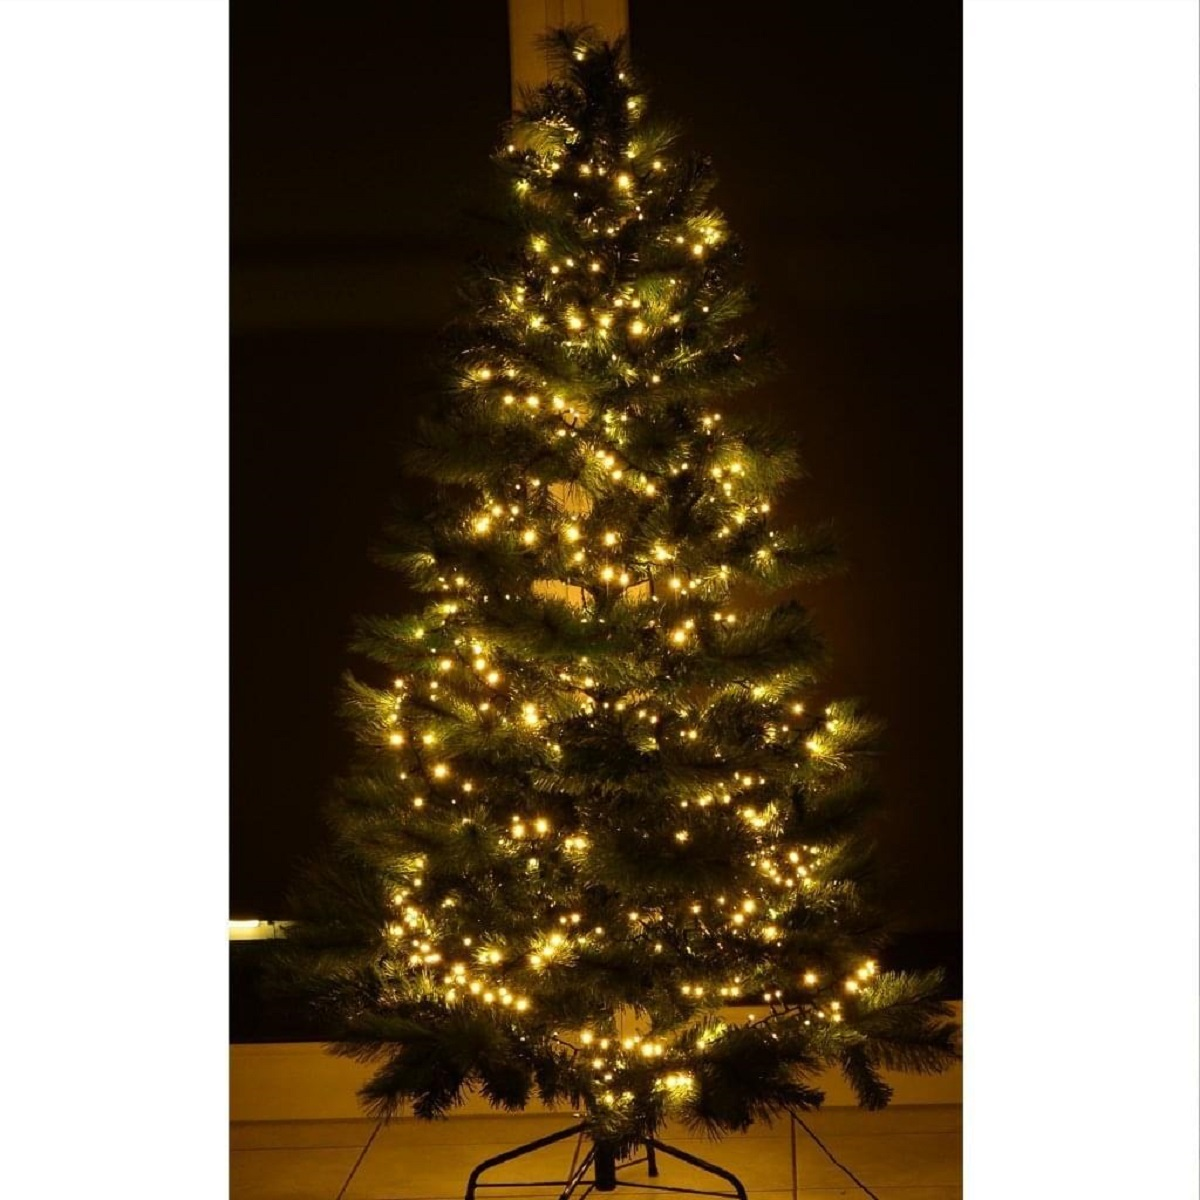 Lichter Deko 1500er SLABO Weihnachten Weihnachtsbeleuchtung Weihnachtsbaum Dekoration LED Lichterkette